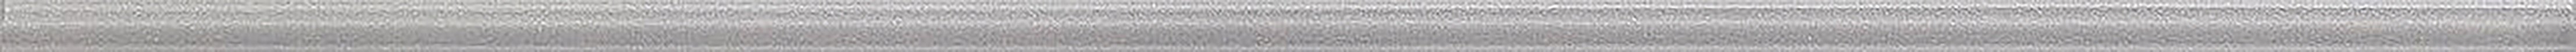 Ceramika Konskie L grey glass - obkládačka listela skleněná 1,5x75 148390, cena za 1.000 ks